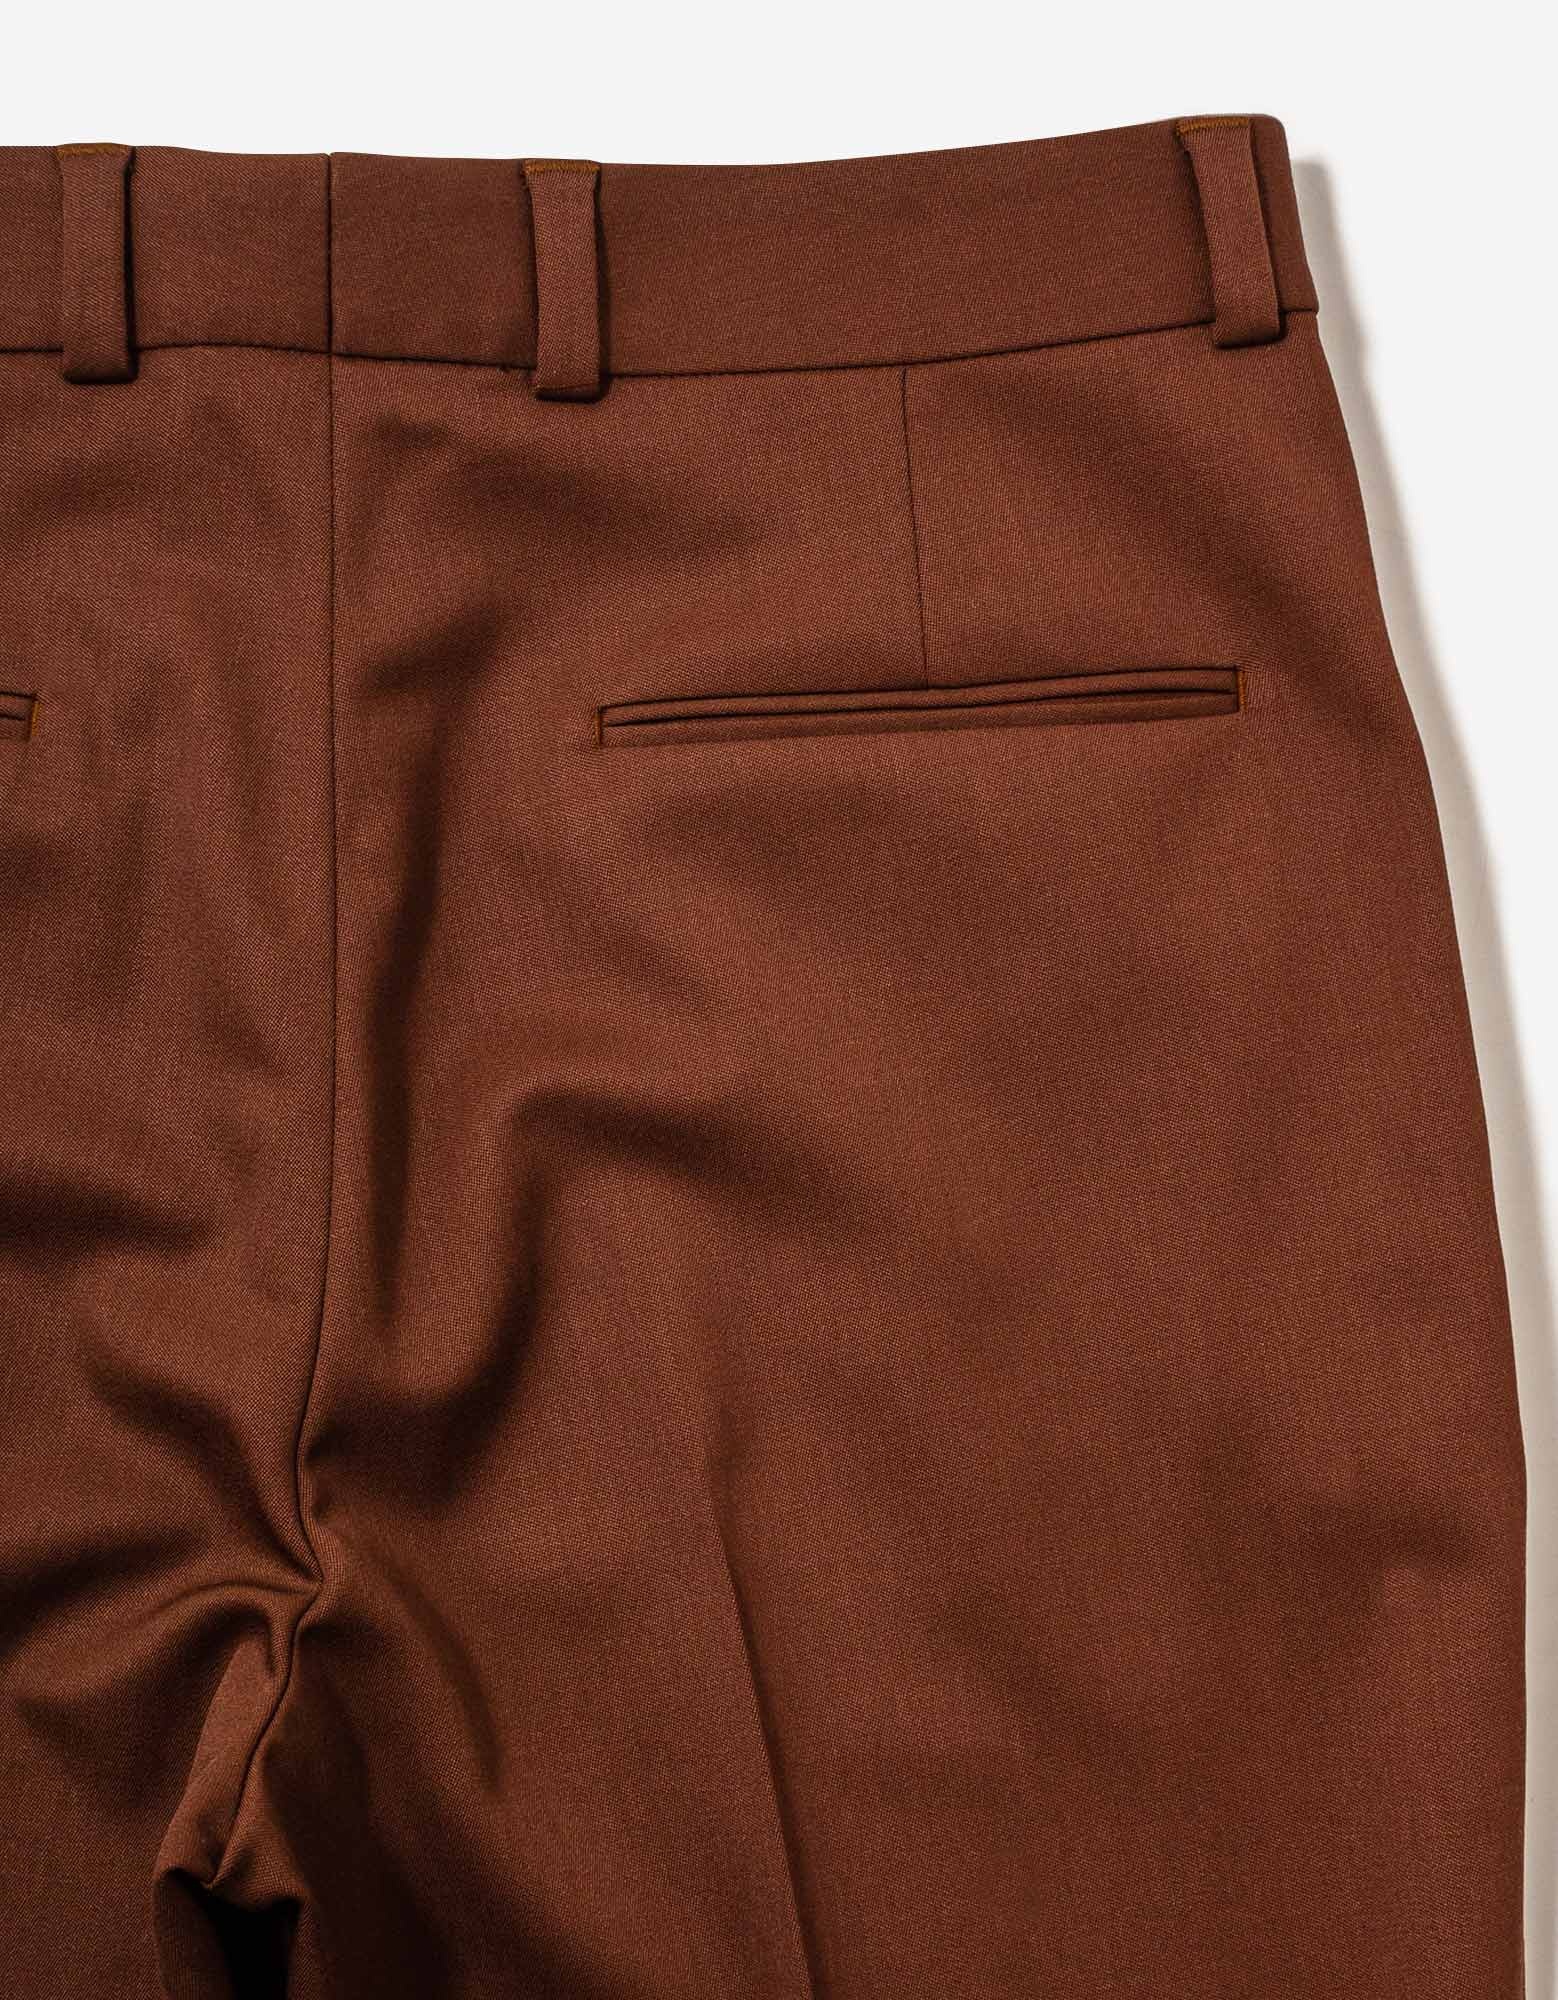 Brown Wool Trousers - 7